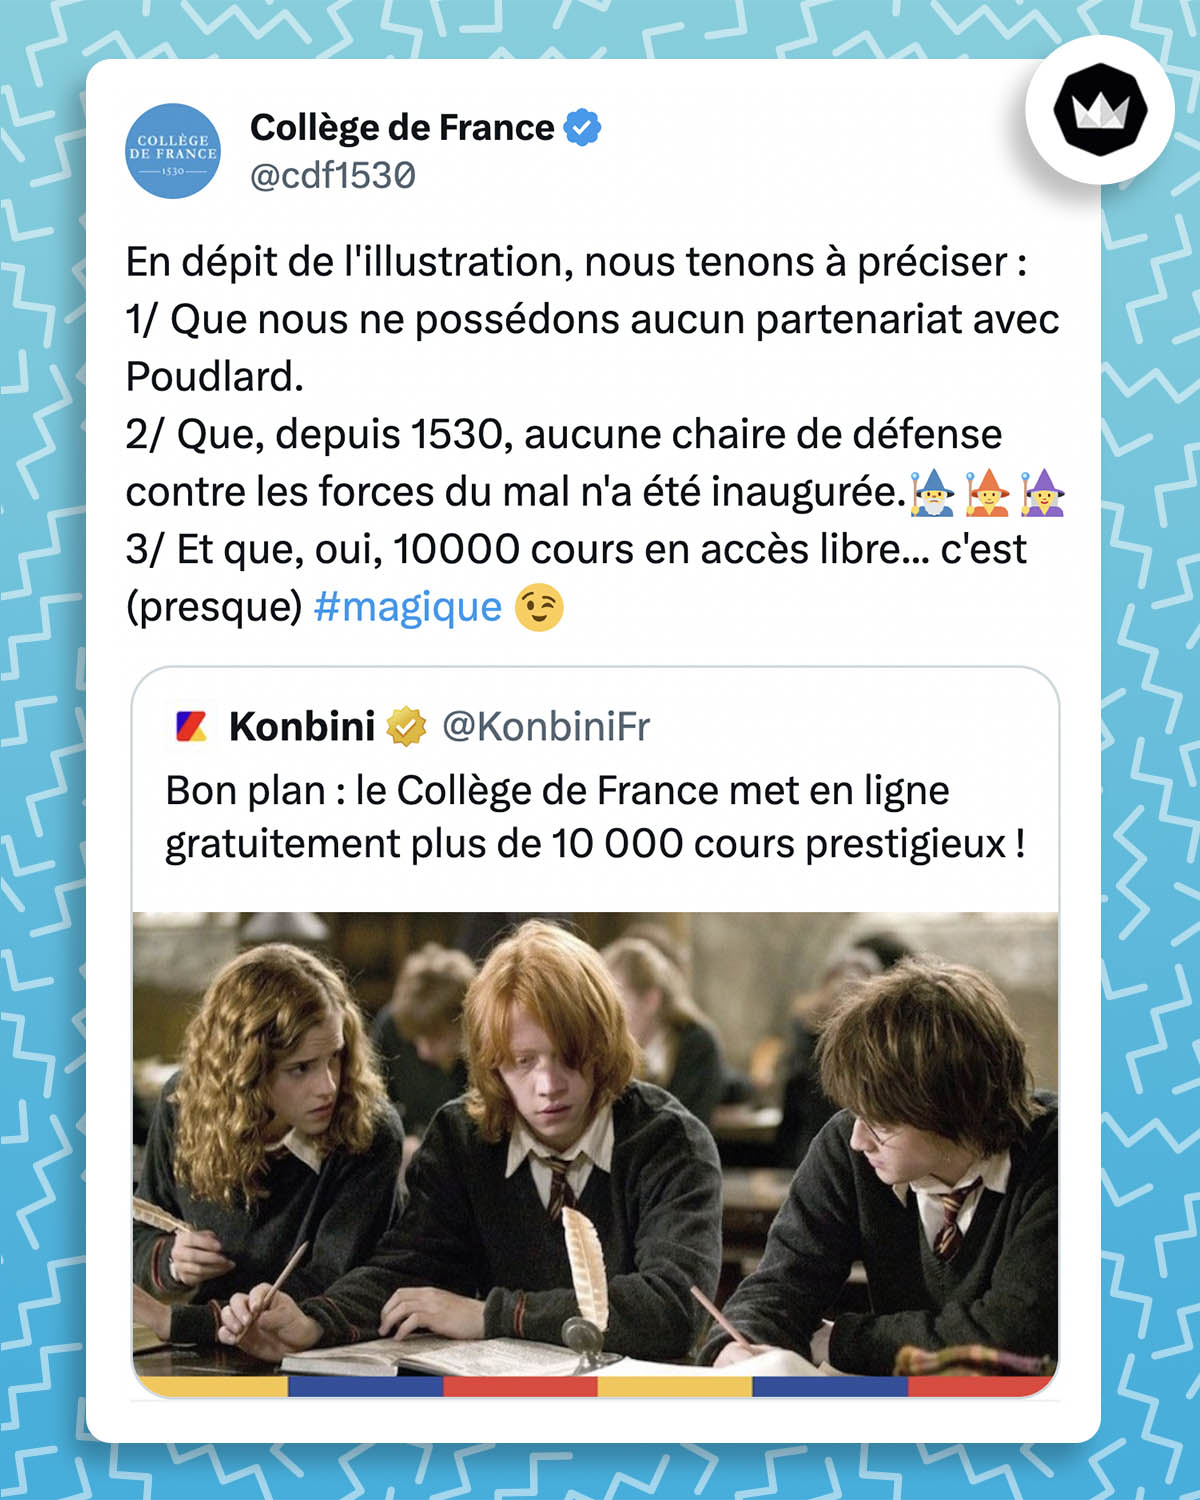 tweet de @cdf1530 : 
"En dépit de l'illustration, nous tenons à préciser :
1/ Que nous ne possédons aucun partenariat avec Poudlard.
2/ Que, depuis 1530, aucune chaire de défense contre les forces du mal n'a été inaugurée. (émojis magiciens)
3/ Et que, oui, 10000 cours en accès libre... c'est (presque) #magique"

Il cite un tweet de @KonbiniFr :
"Bon plan : le Collège de France met en ligne gratuitement plus de 10 000 cours prestigieux !" accompagné d'une illustration d'Hermione Granger, Ron Weasley et Harry Potter.